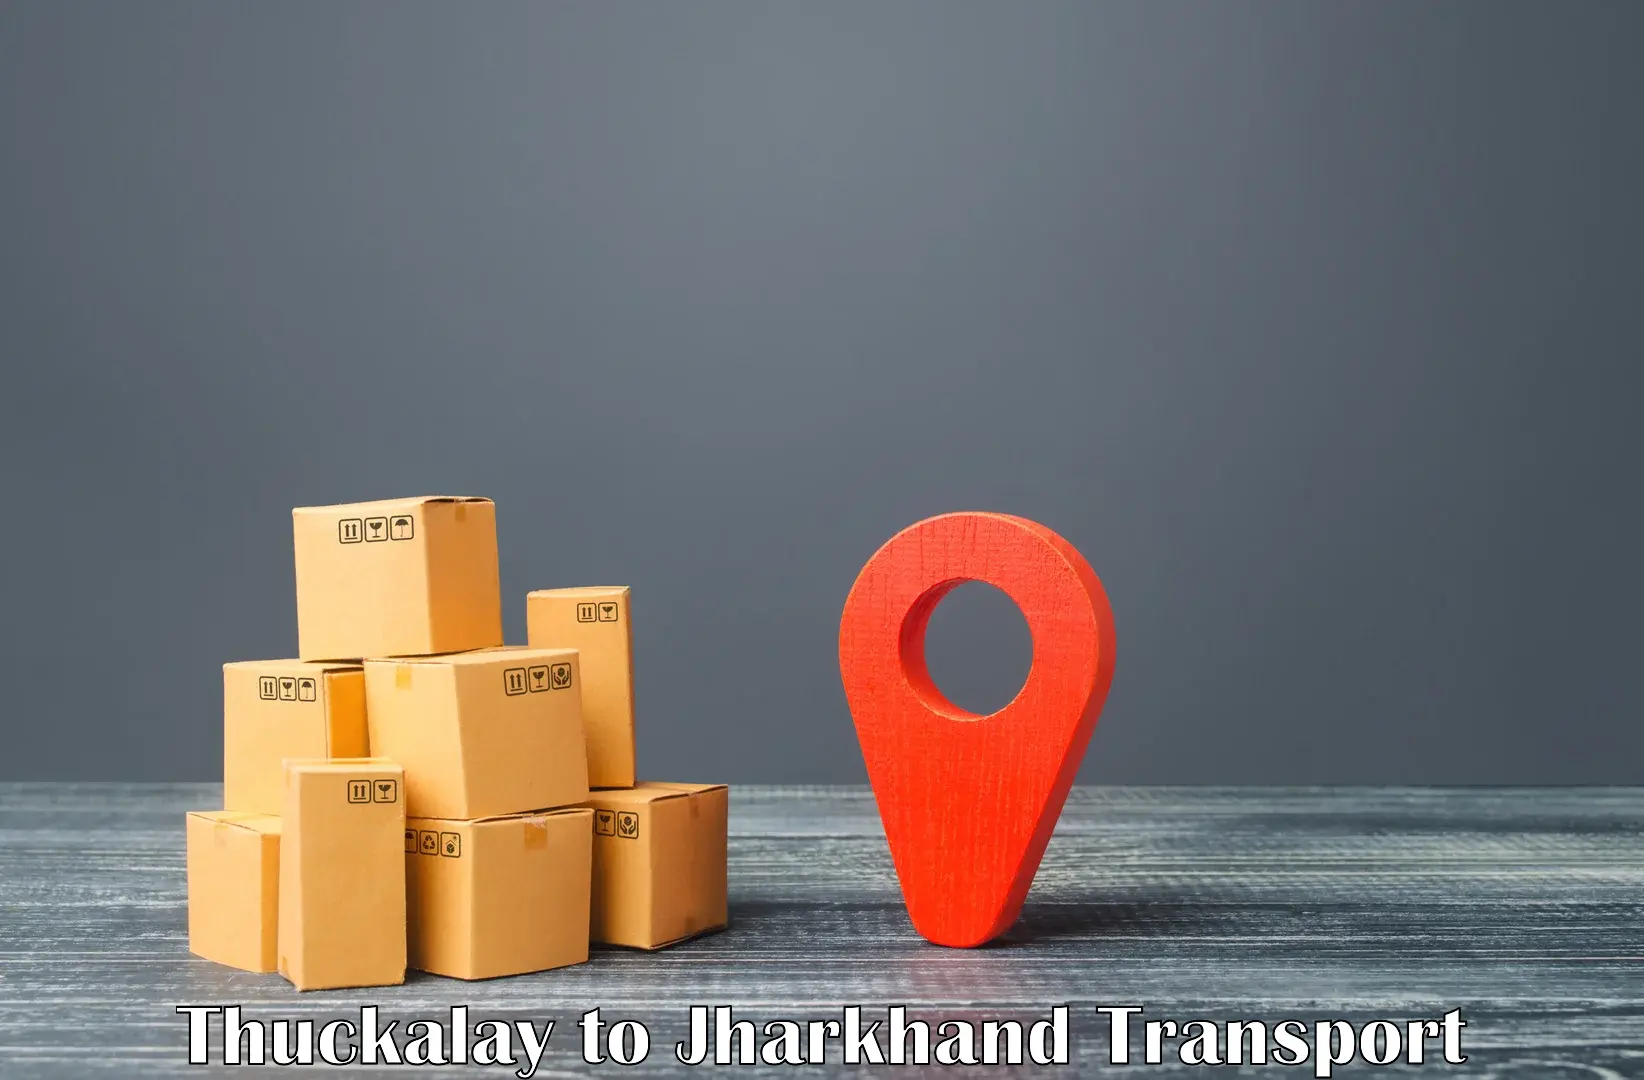 All India transport service Thuckalay to Godda